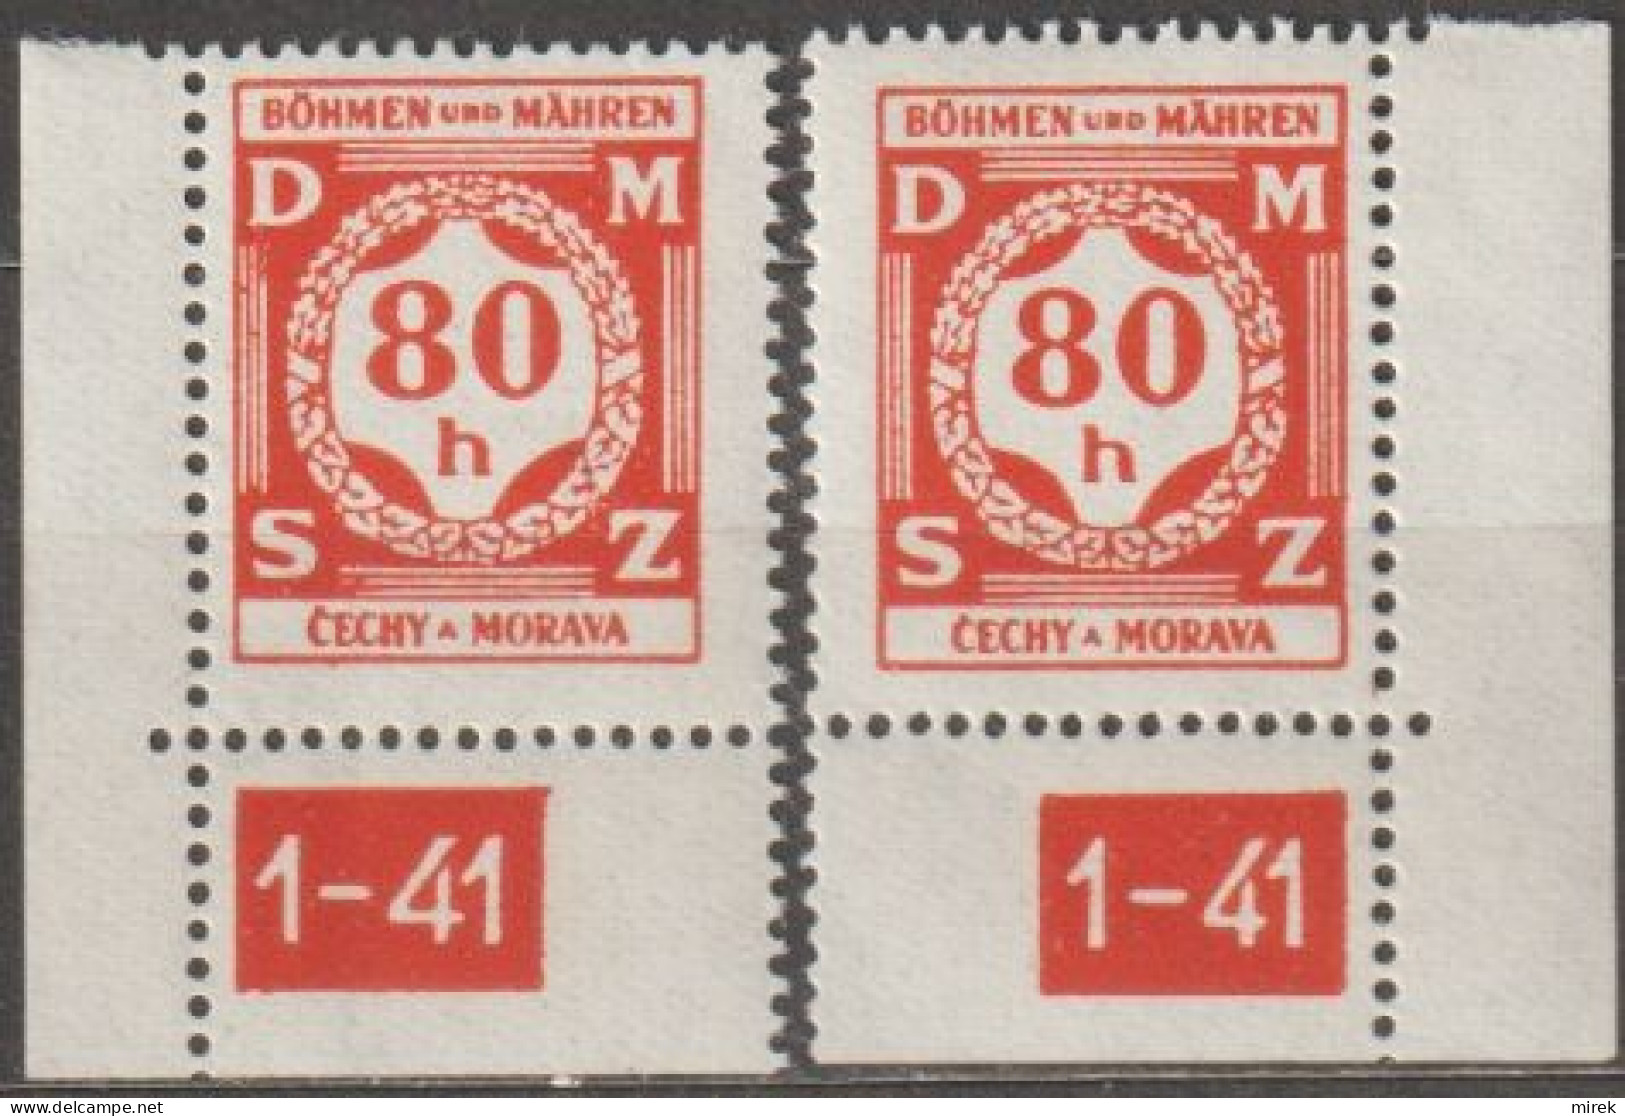 30a/ Pof. SL 5, Corner Stamps, Plate Number 1-41 - Nuovi